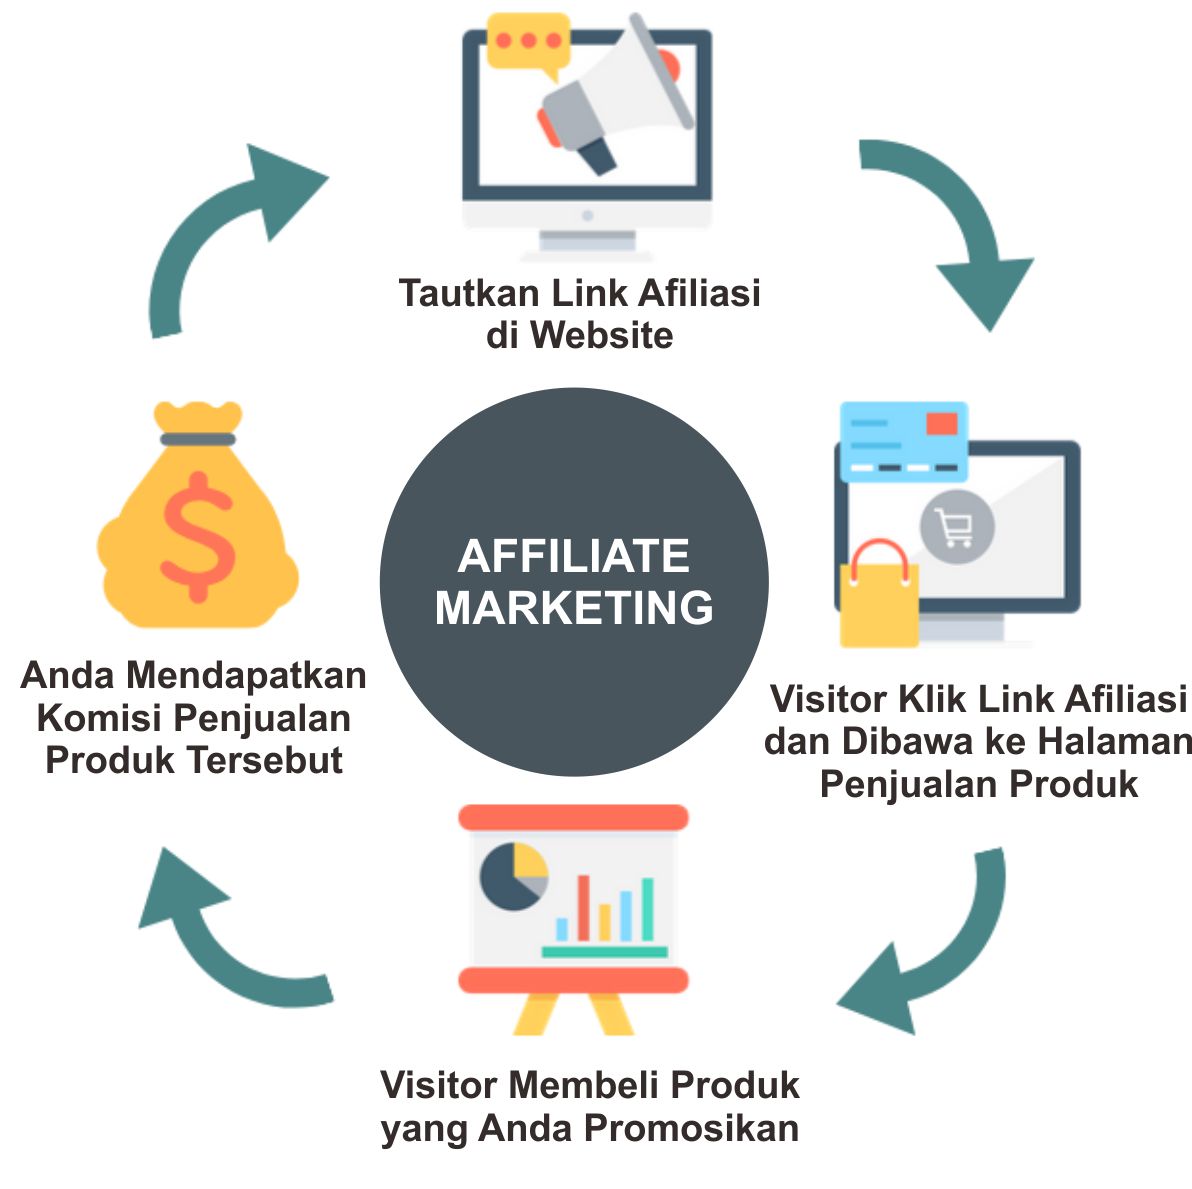 cara kerja affiliate marketing